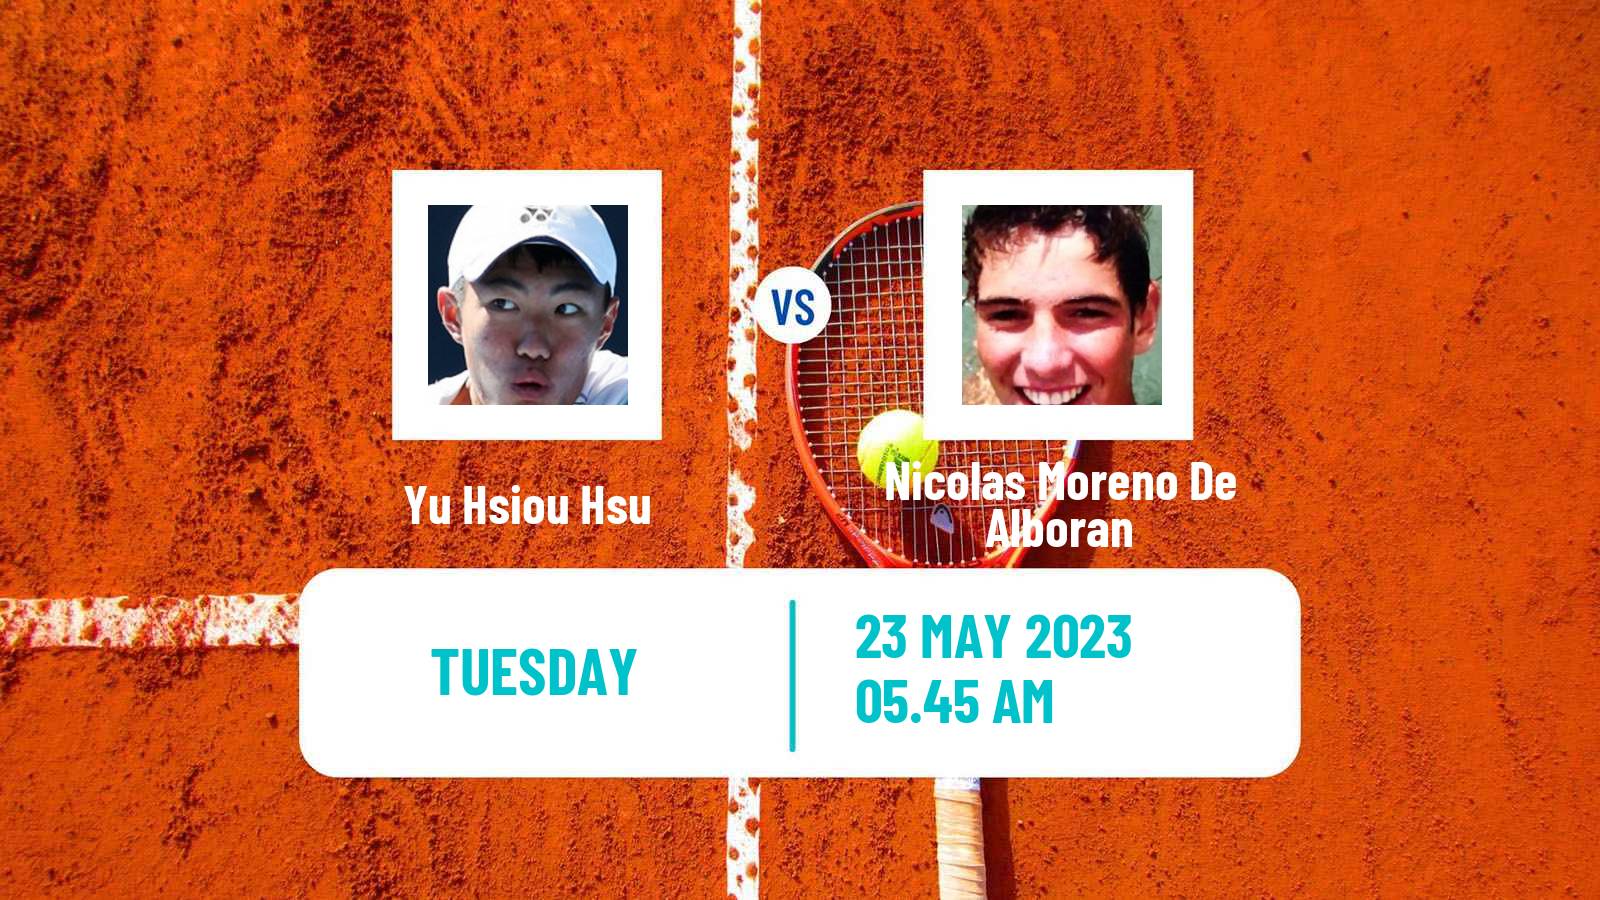 Tennis ATP Roland Garros Yu Hsiou Hsu - Nicolas Moreno De Alboran